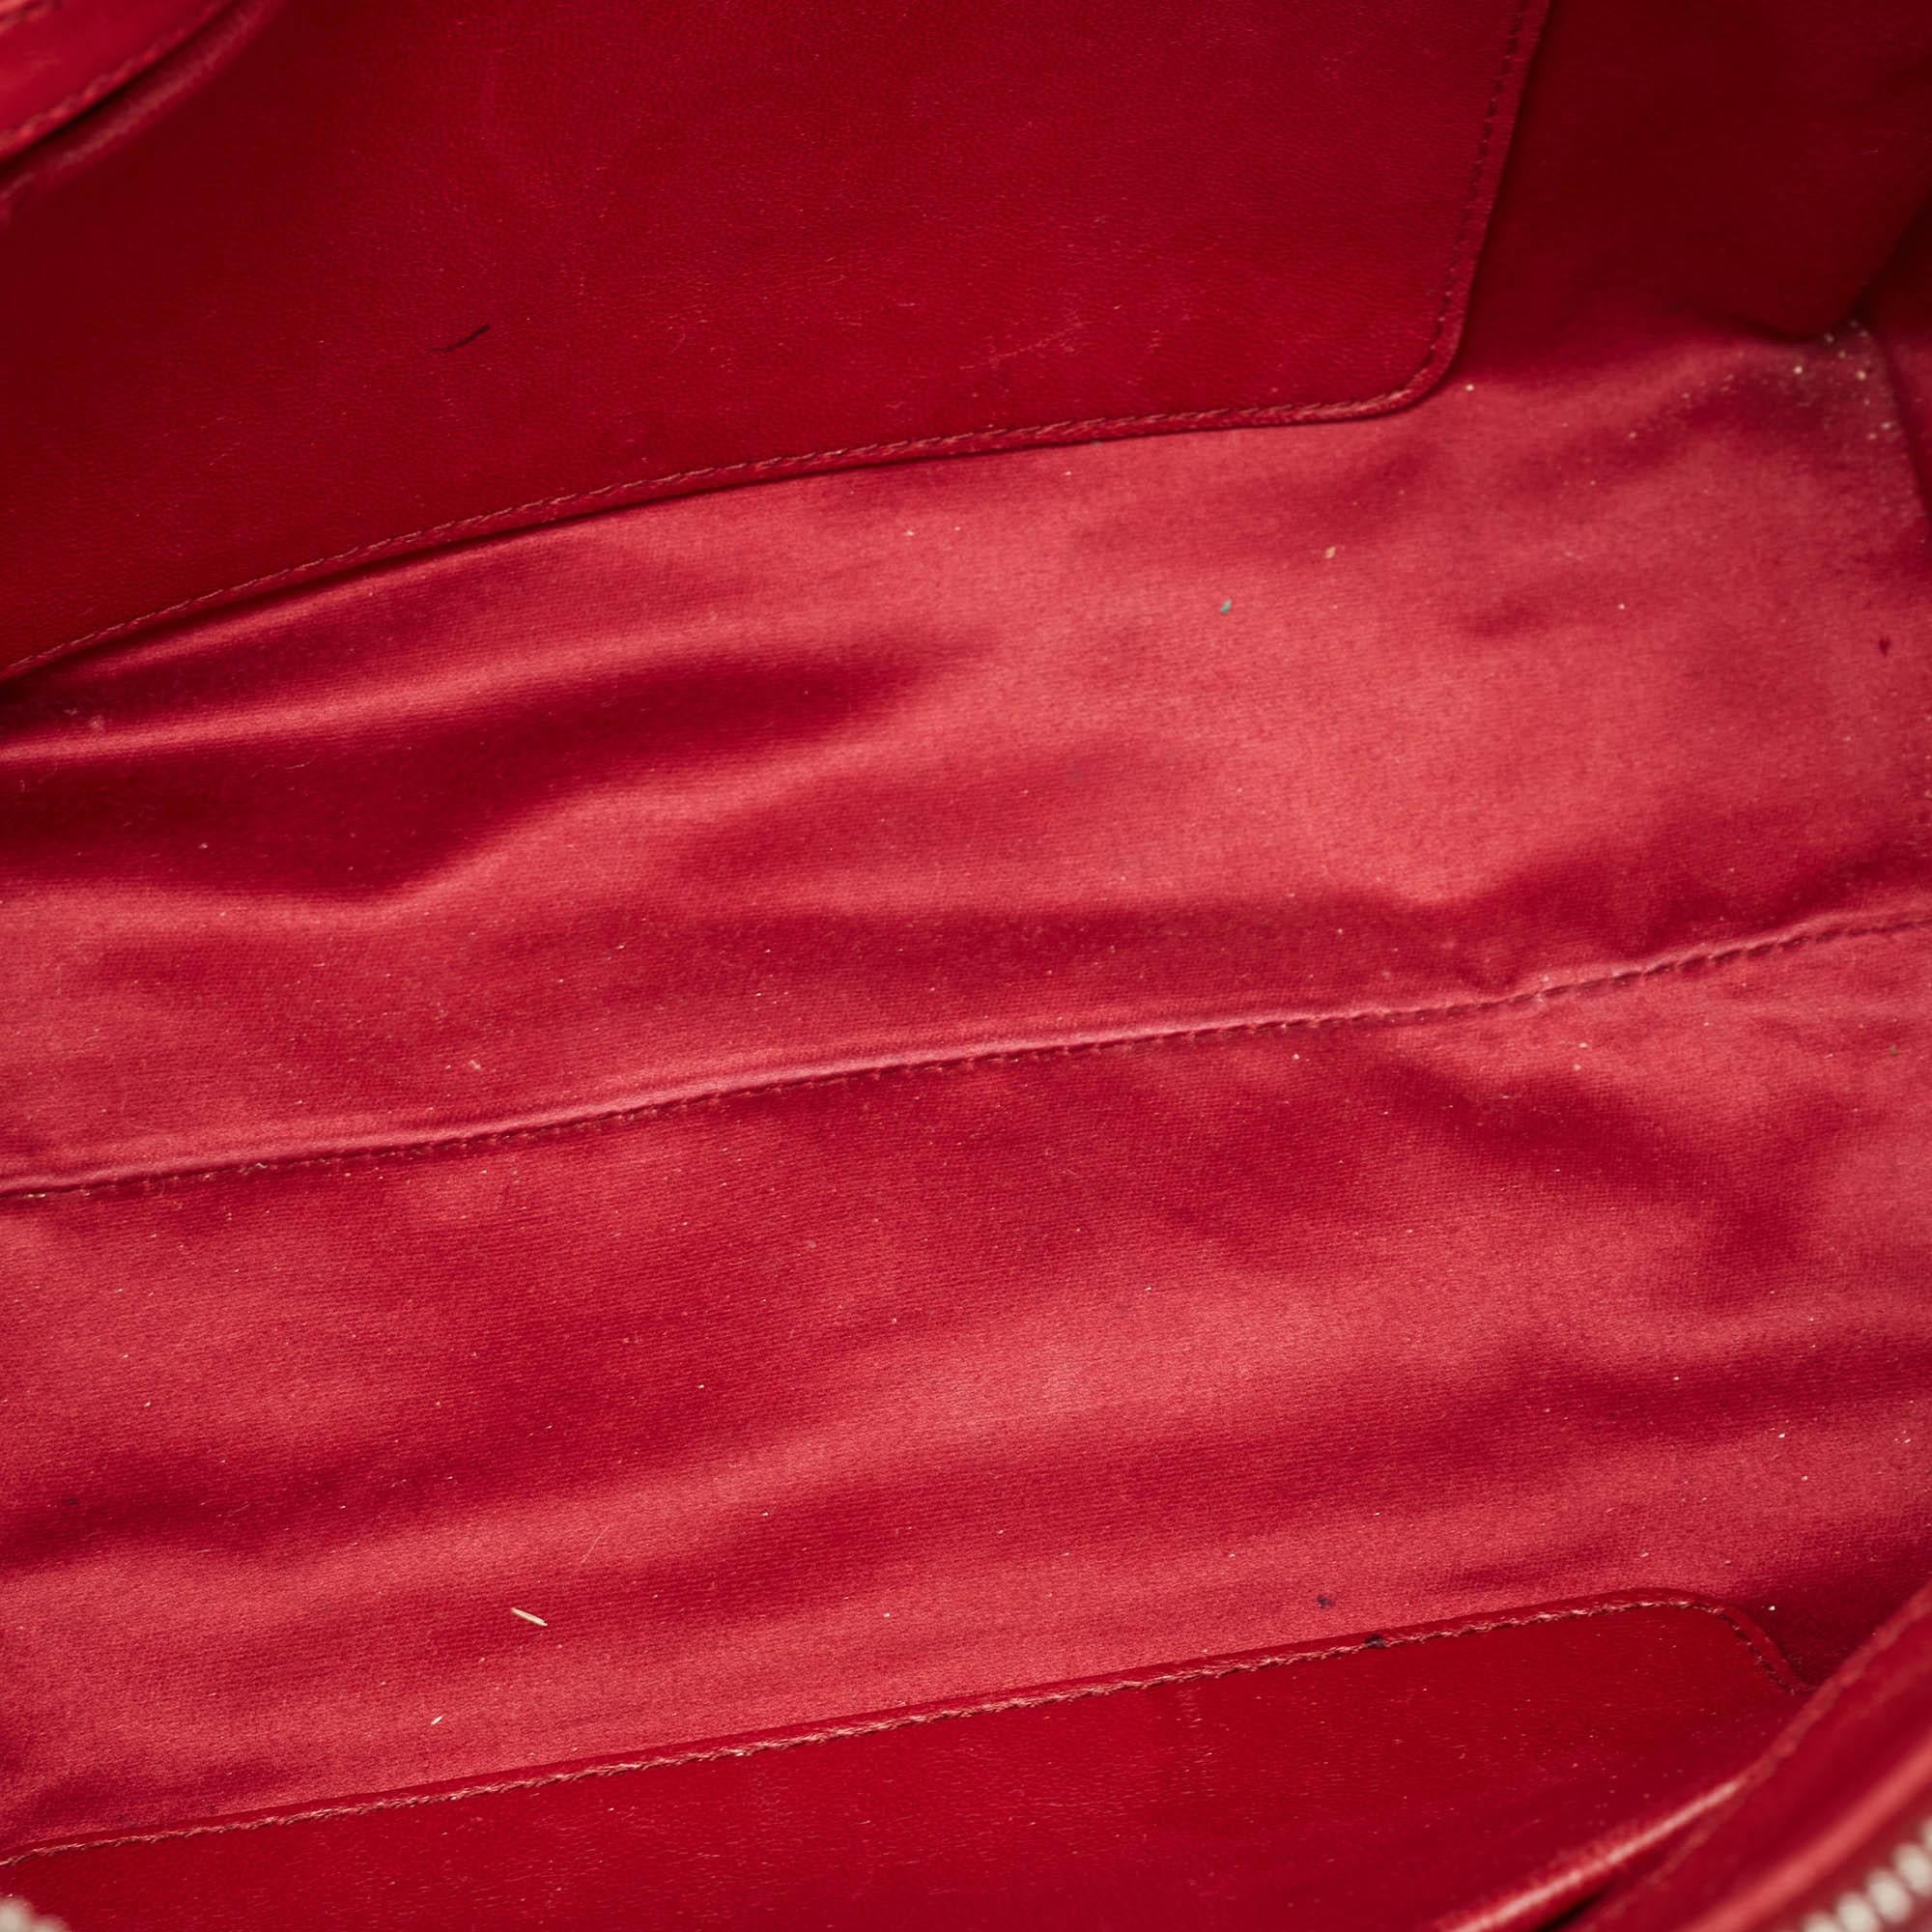 Miu Miu Red Matelasse Leather Top Zip Tote For Sale 6